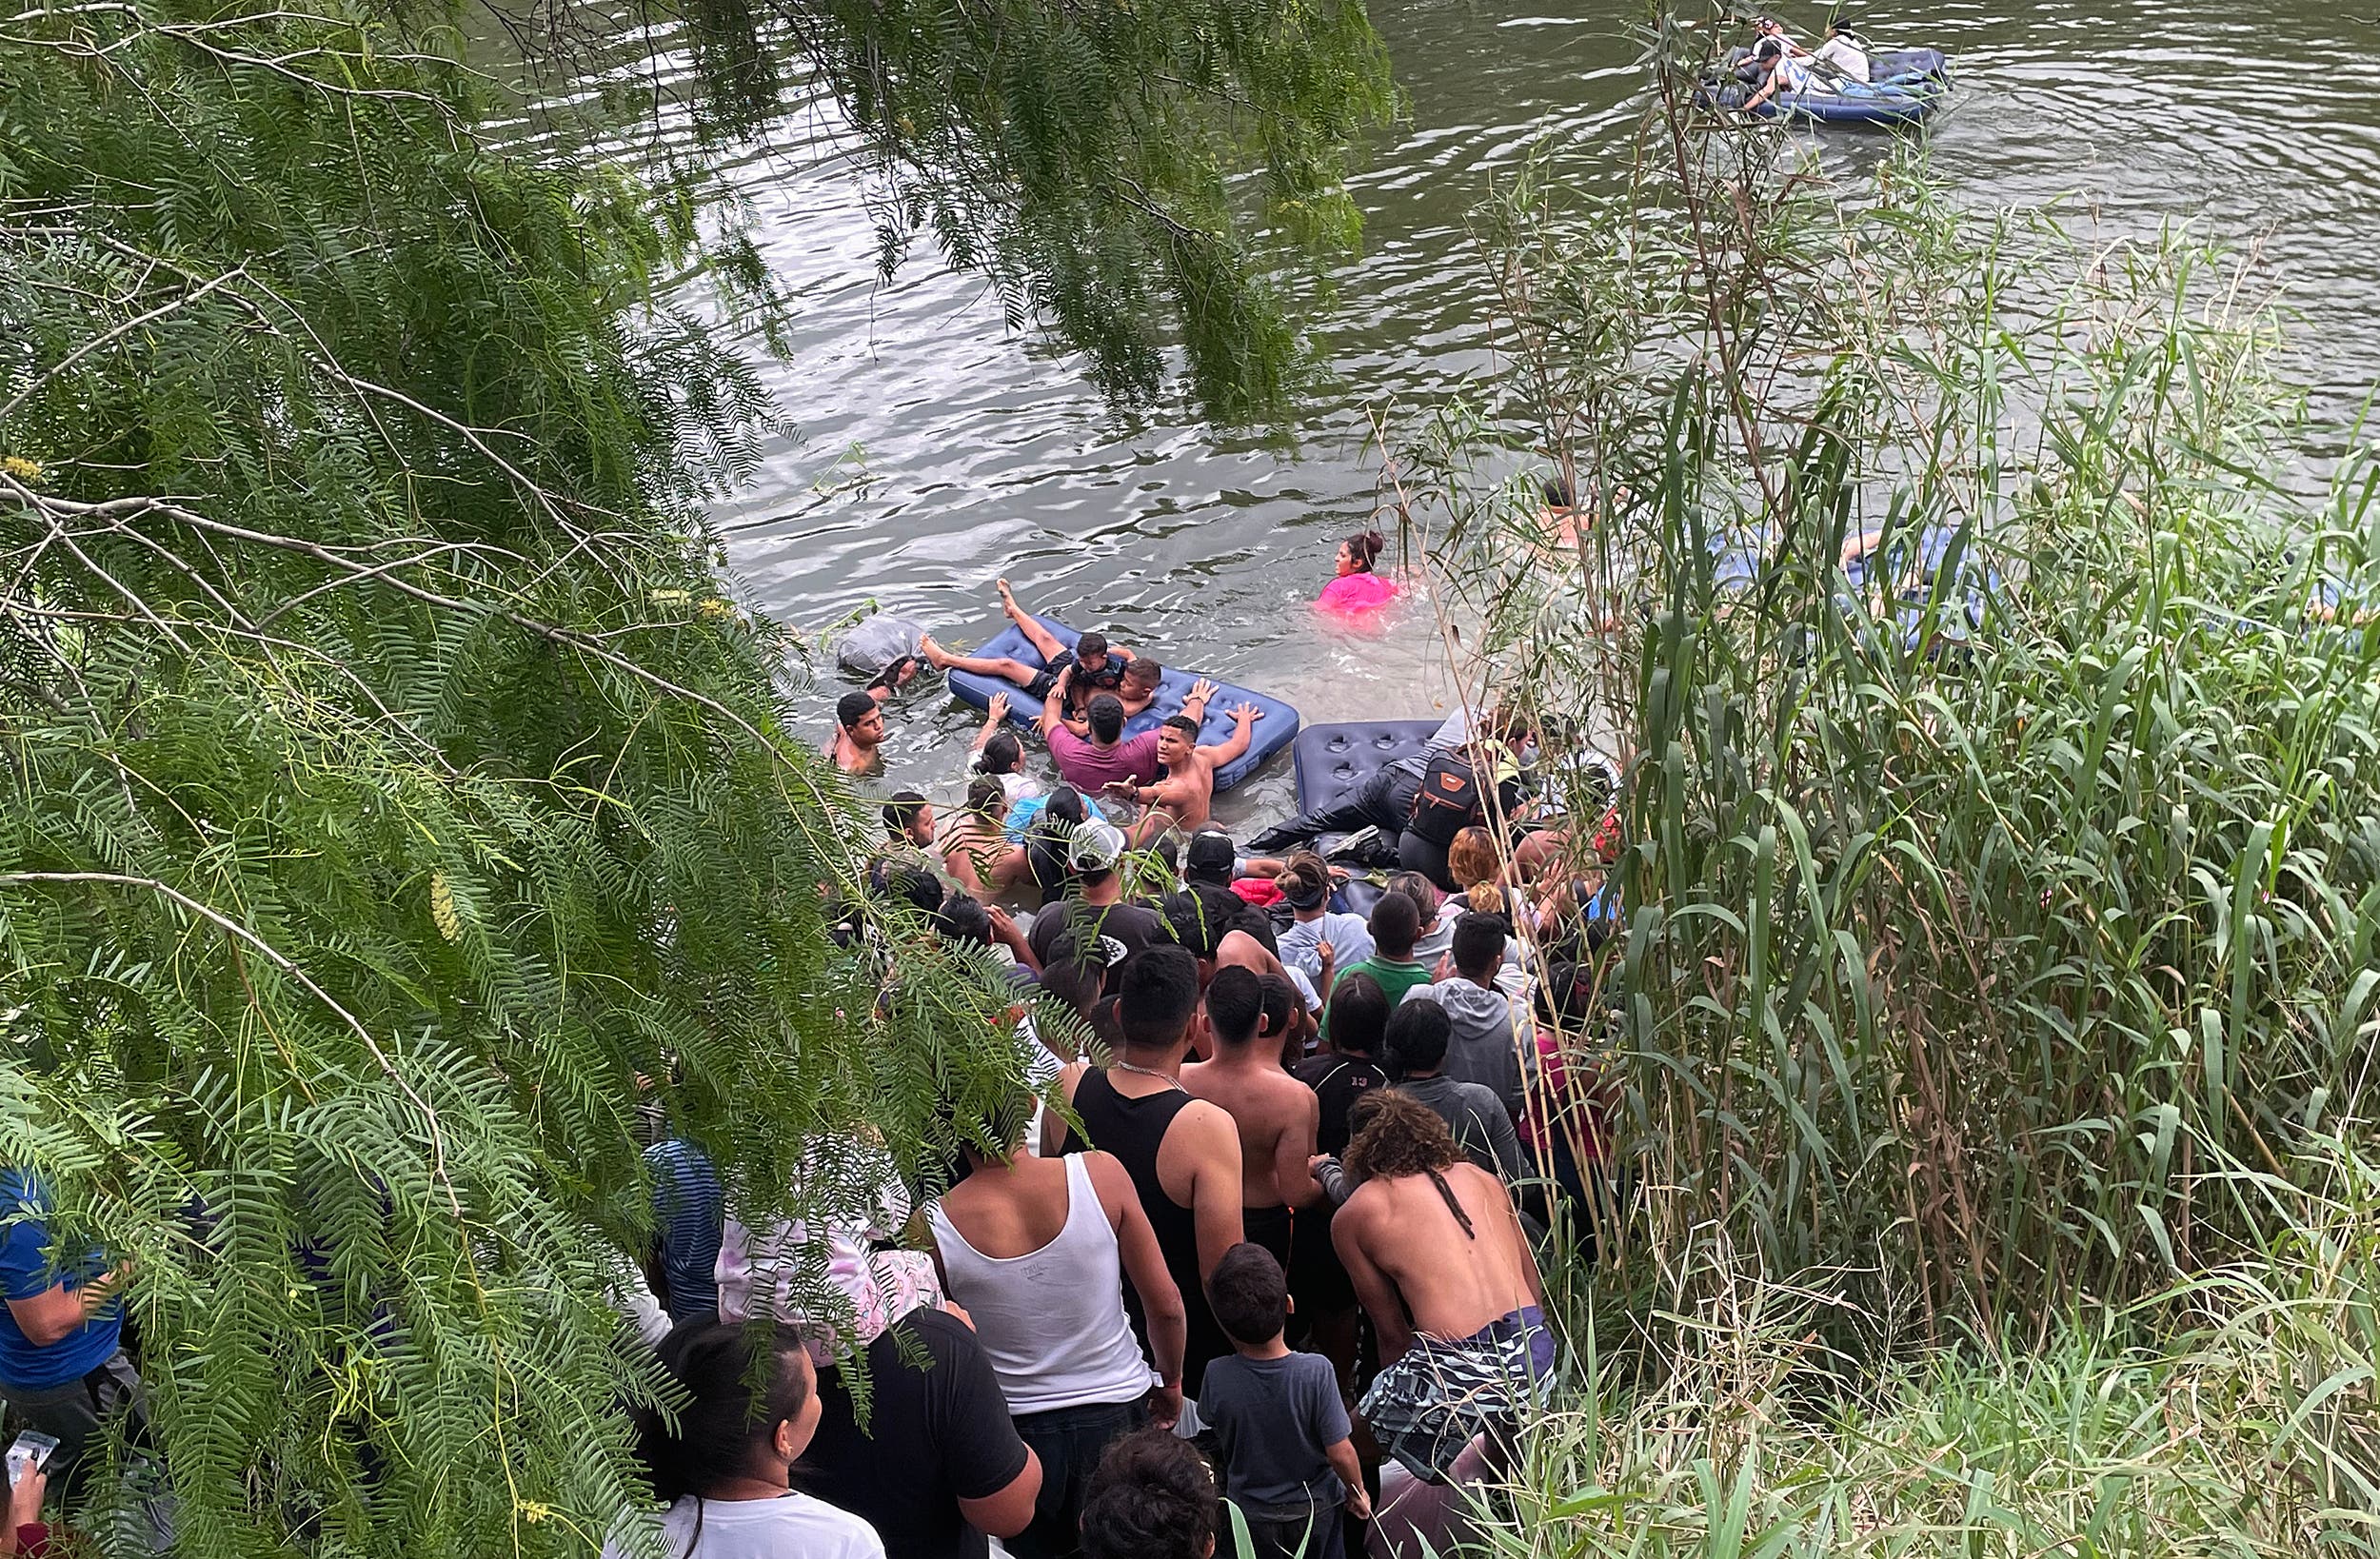 video) Cientos de migrantes se lanzan al río Bravo pese a aviso de agentes  del INM | Diario de México